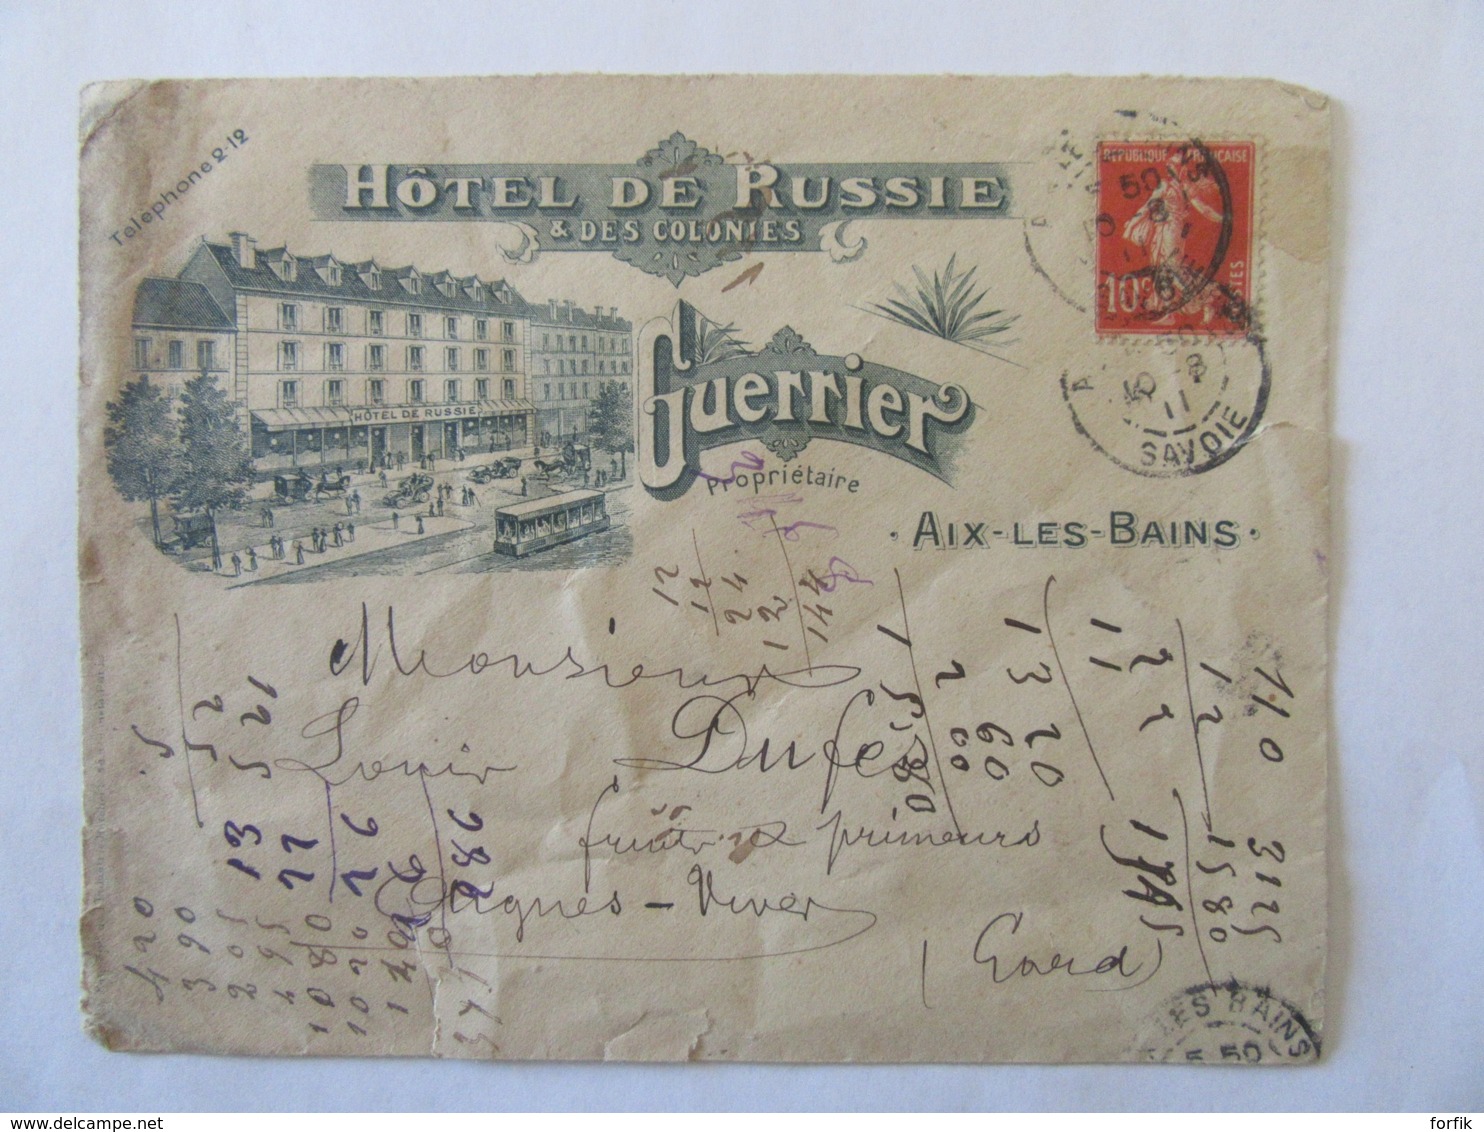 Enveloppe à En-tête De L'Hôtel De Russie & Des Colonies D'Aix-Les-Bains - Guerrier Propriétaire - Circulée En 1911 - 1877-1920: Période Semi Moderne